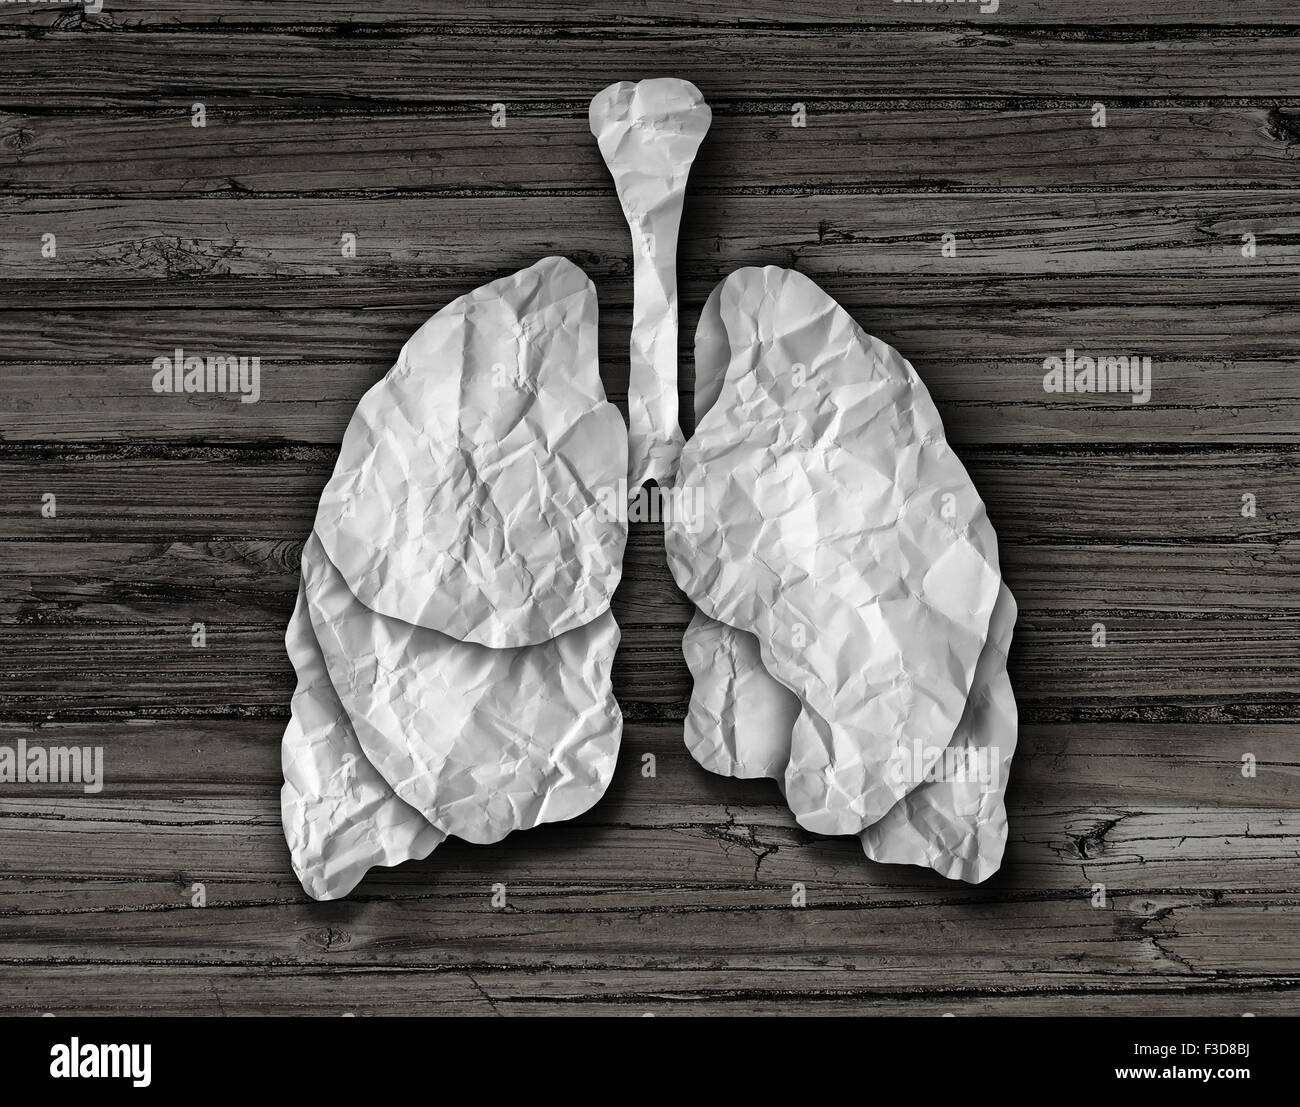 Concept de poumon humain ou des poumons sains fait d'organe de coupe papier blanc froissé sur un fond représentant le vieux bois anatomie du système respiratoire de fournir l'organisme en oxygène. Banque D'Images